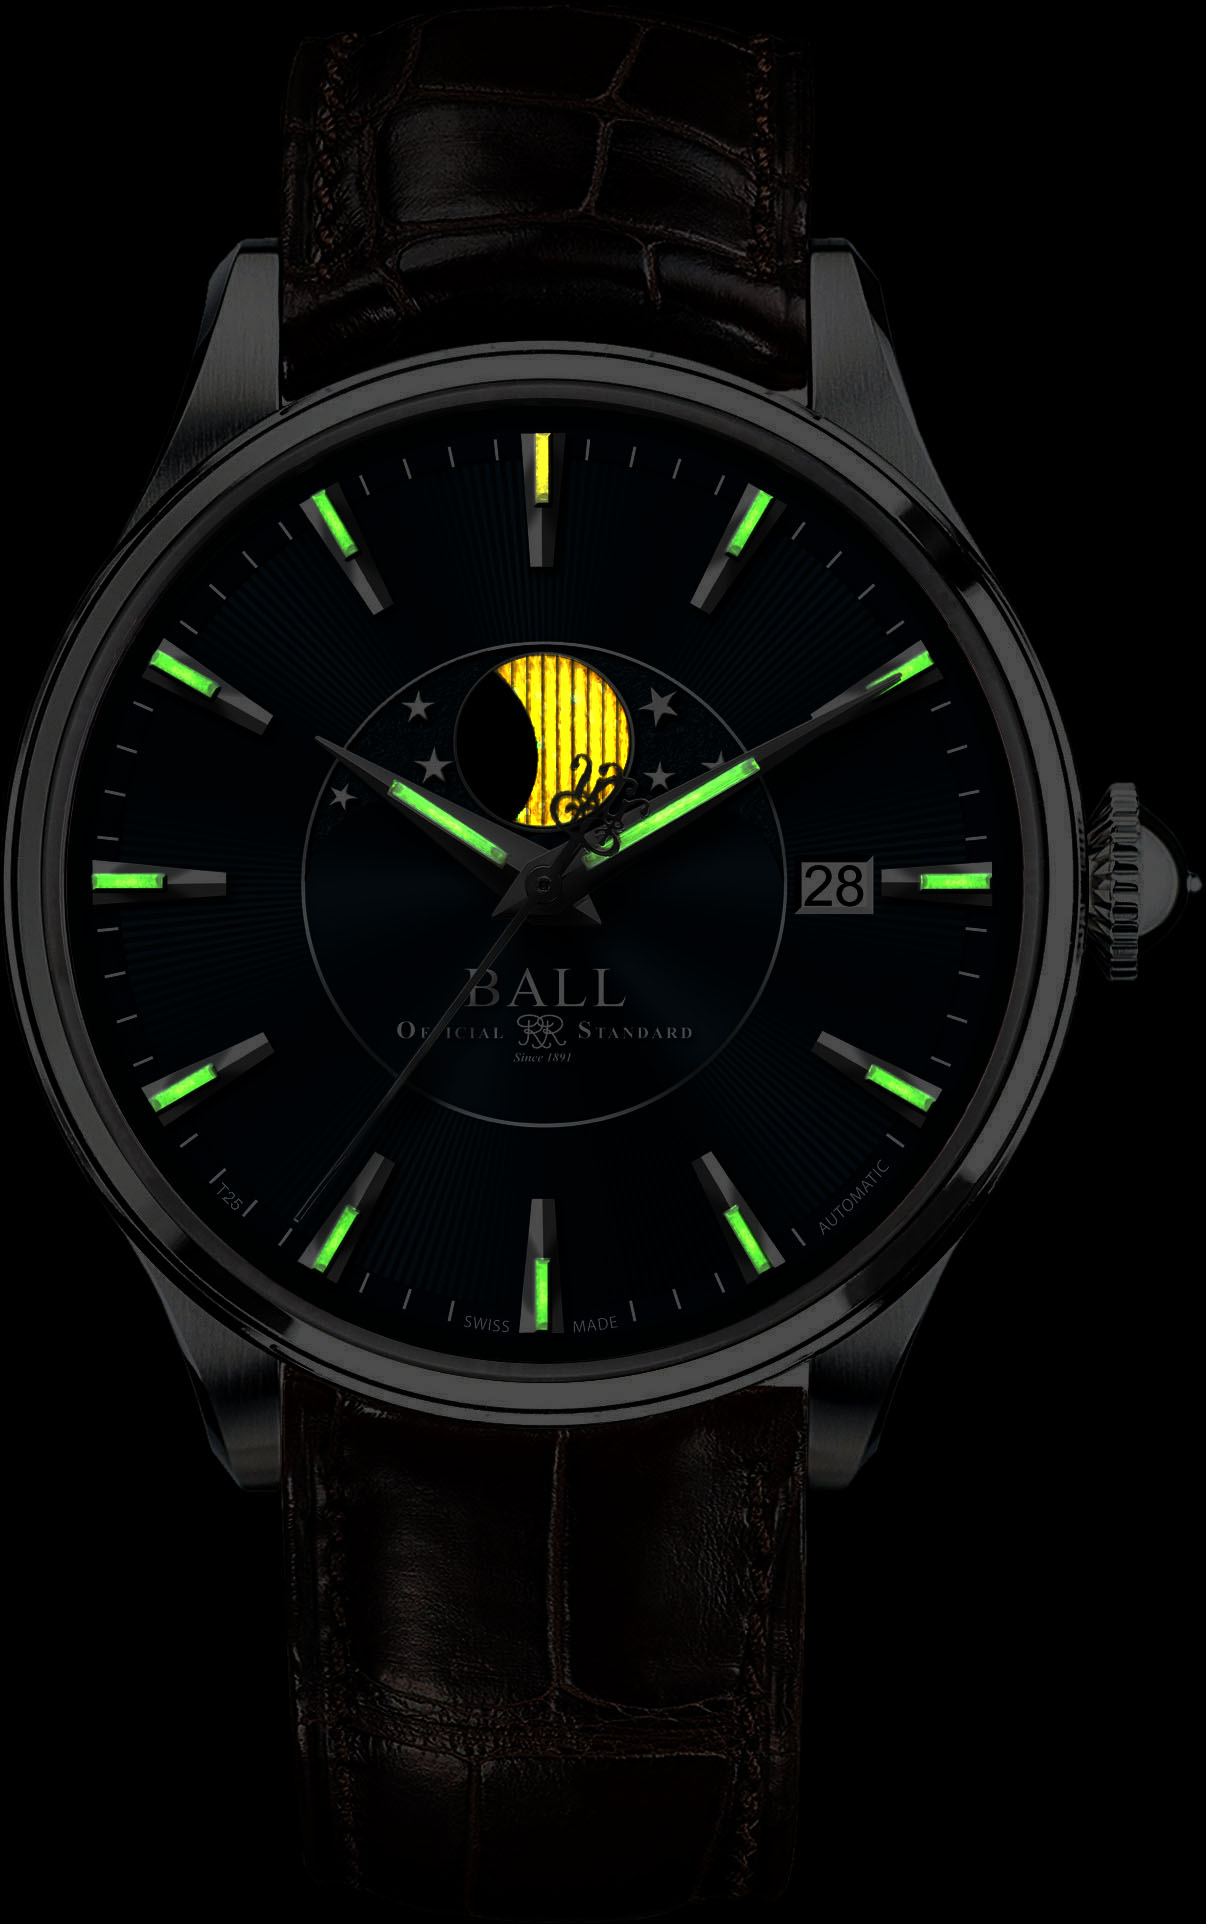 Куплю наручные часы с подсветкой. Наручные часы Ball nm3082d-SJ-SL. Часы с тритиевой подсветкой Ball. Часы Ориент с тритием.